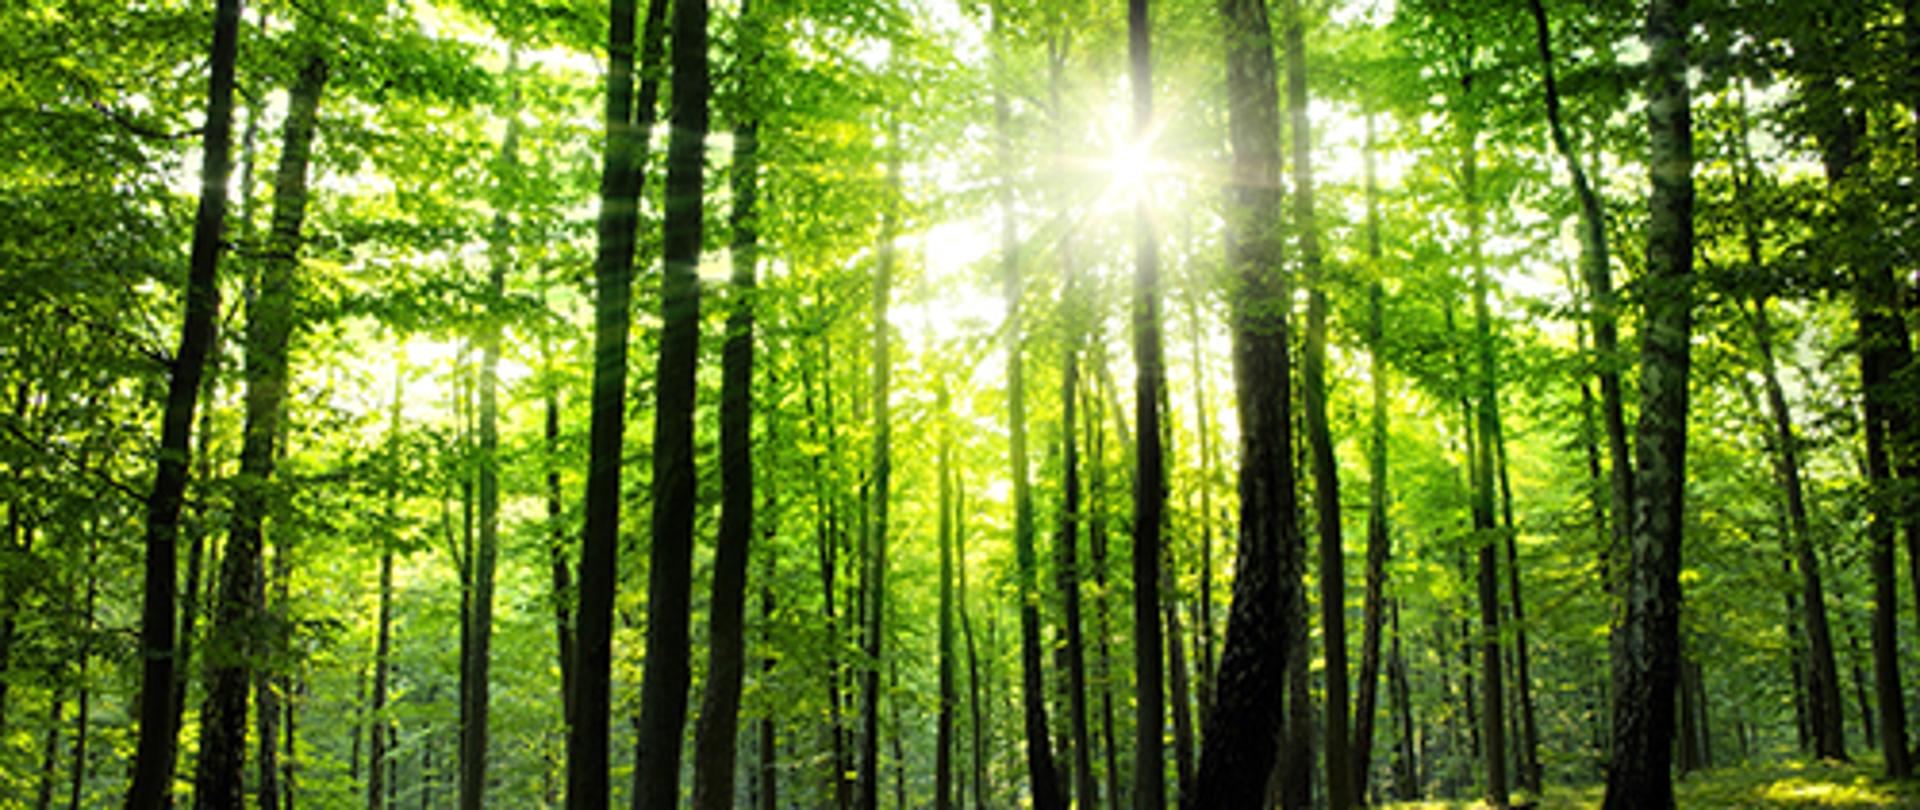 Rusza pomoc na inwestycje w lasach prywatnych – informuje ARiMR   